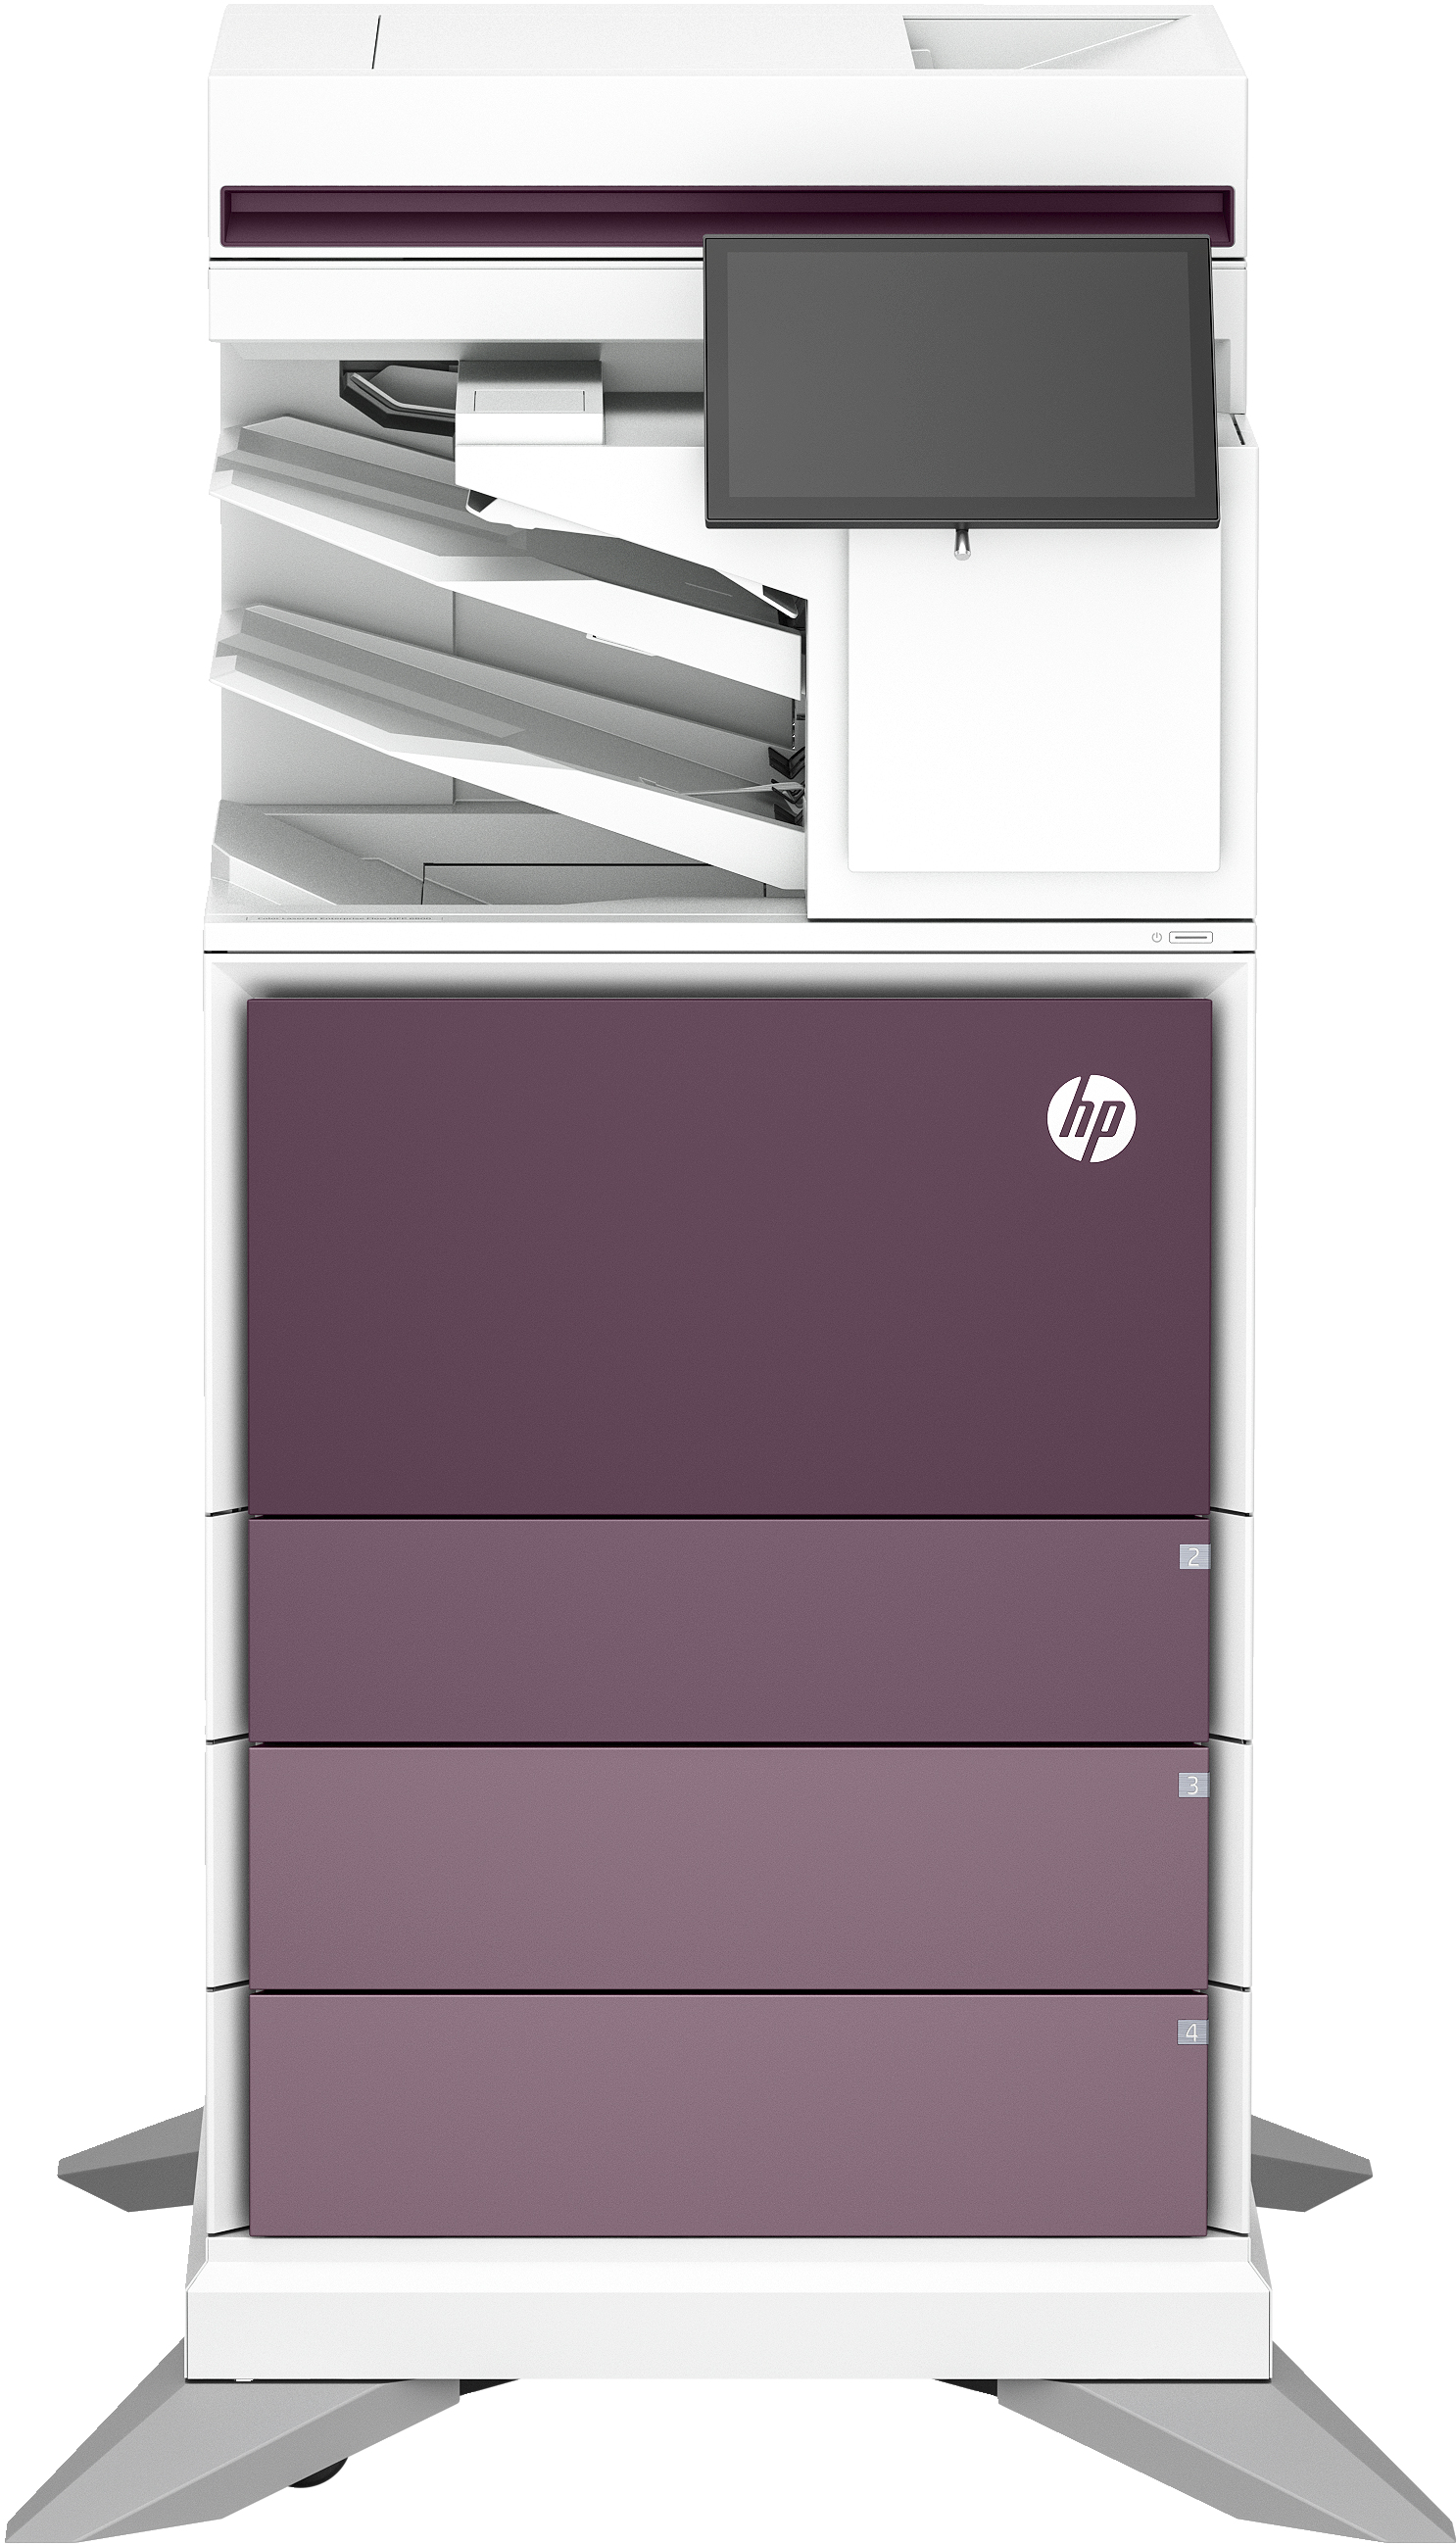 HP Imprimante multifonction Color LaserJet Enterprise Flow 6800zfsw, Impression, copie, scan, fax, Flow. Écran tactile. Agrafage. Cartouche TerraJet